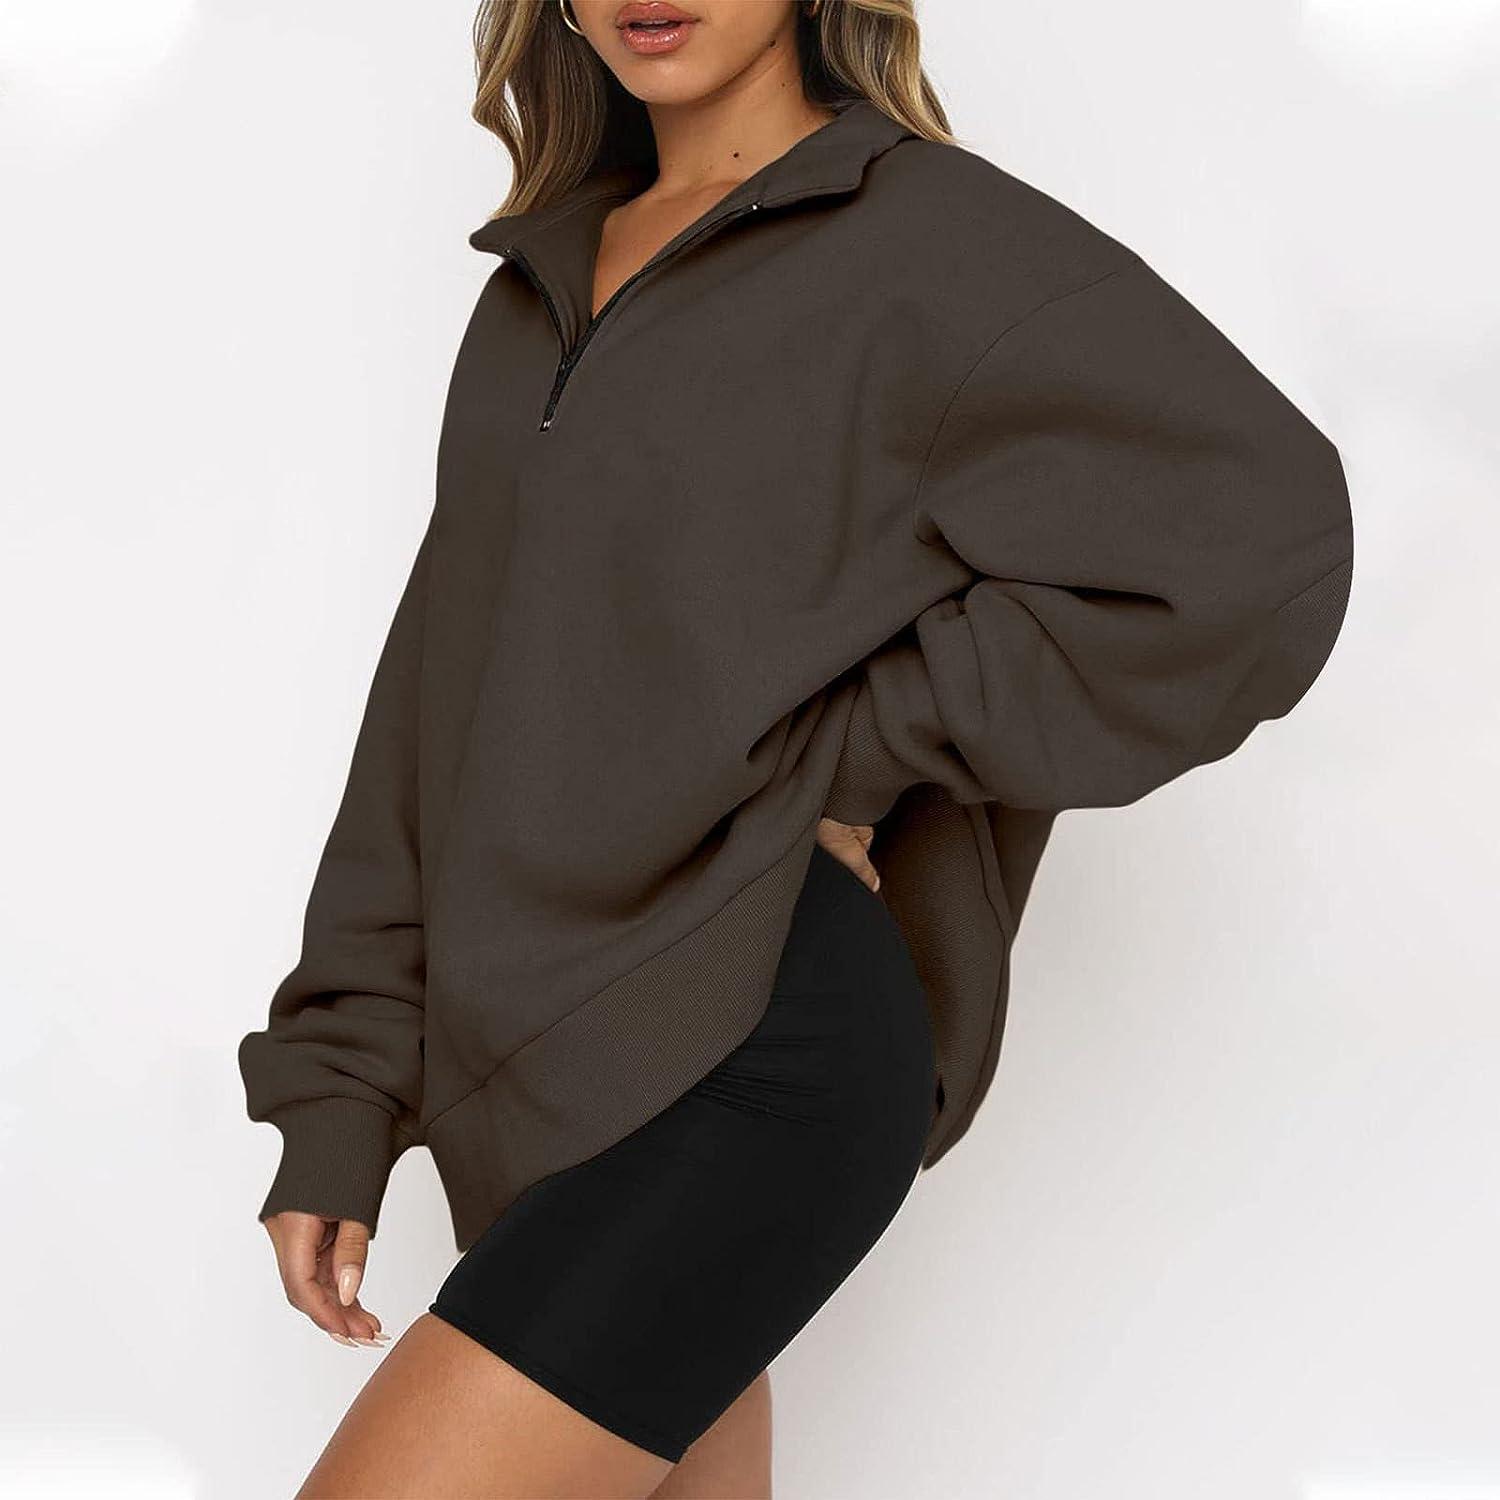 Women's Half Zip Up Sweatshirt Lapel Loose Fit Pullover Sweatshirt